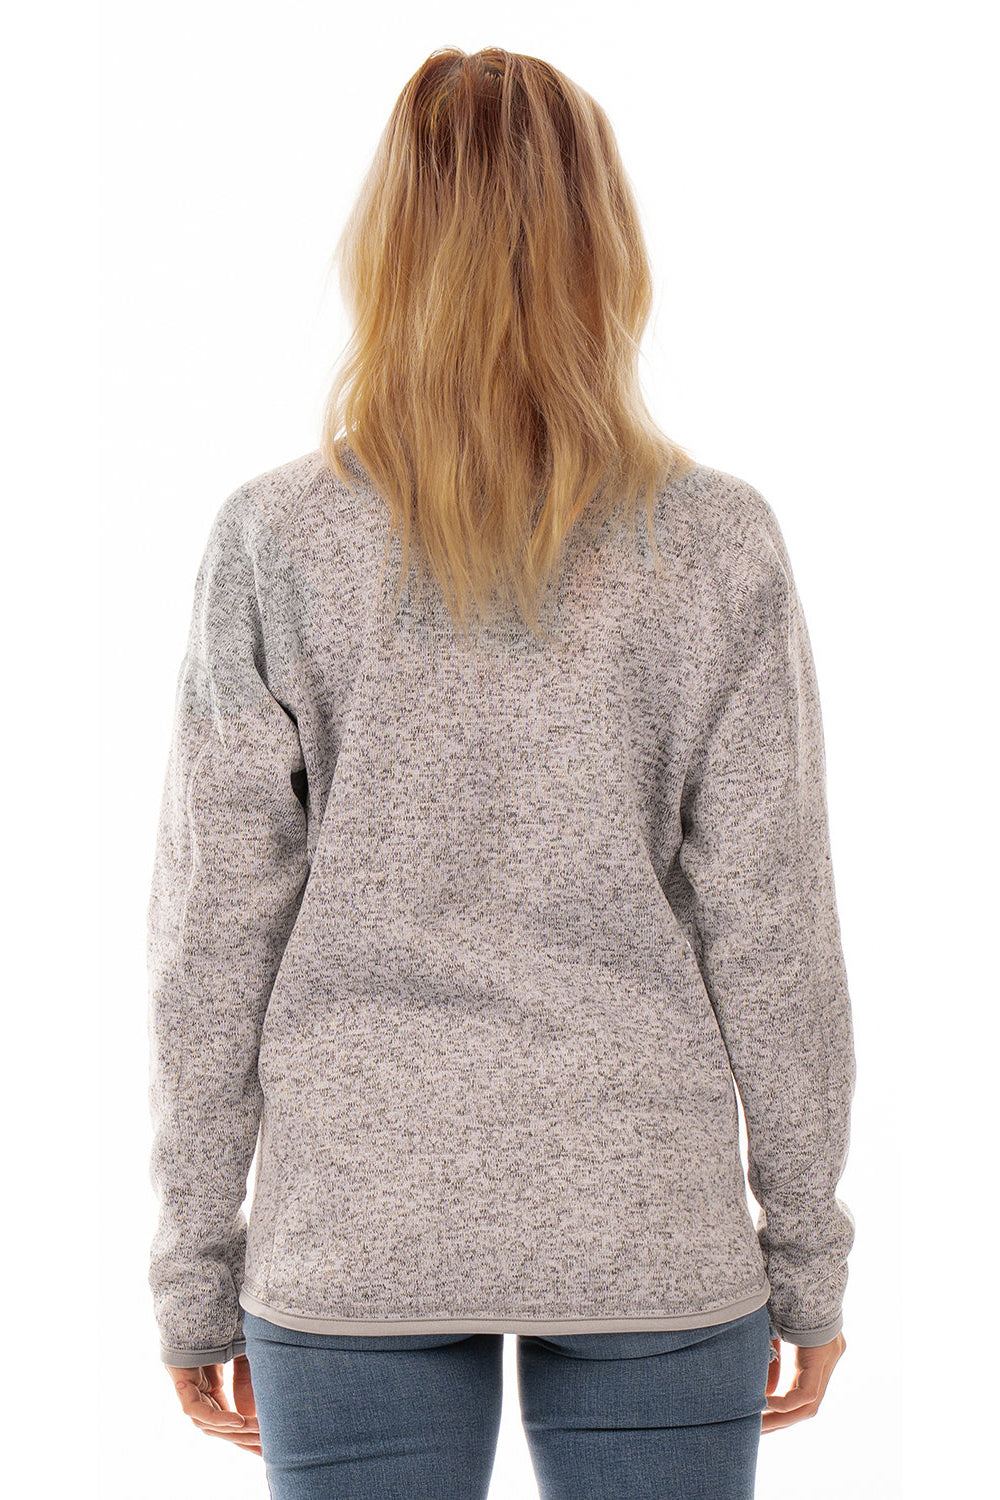 Burnside 5901 Womens Sweater Knit Full Zip Jacket Heather Grey Model Back